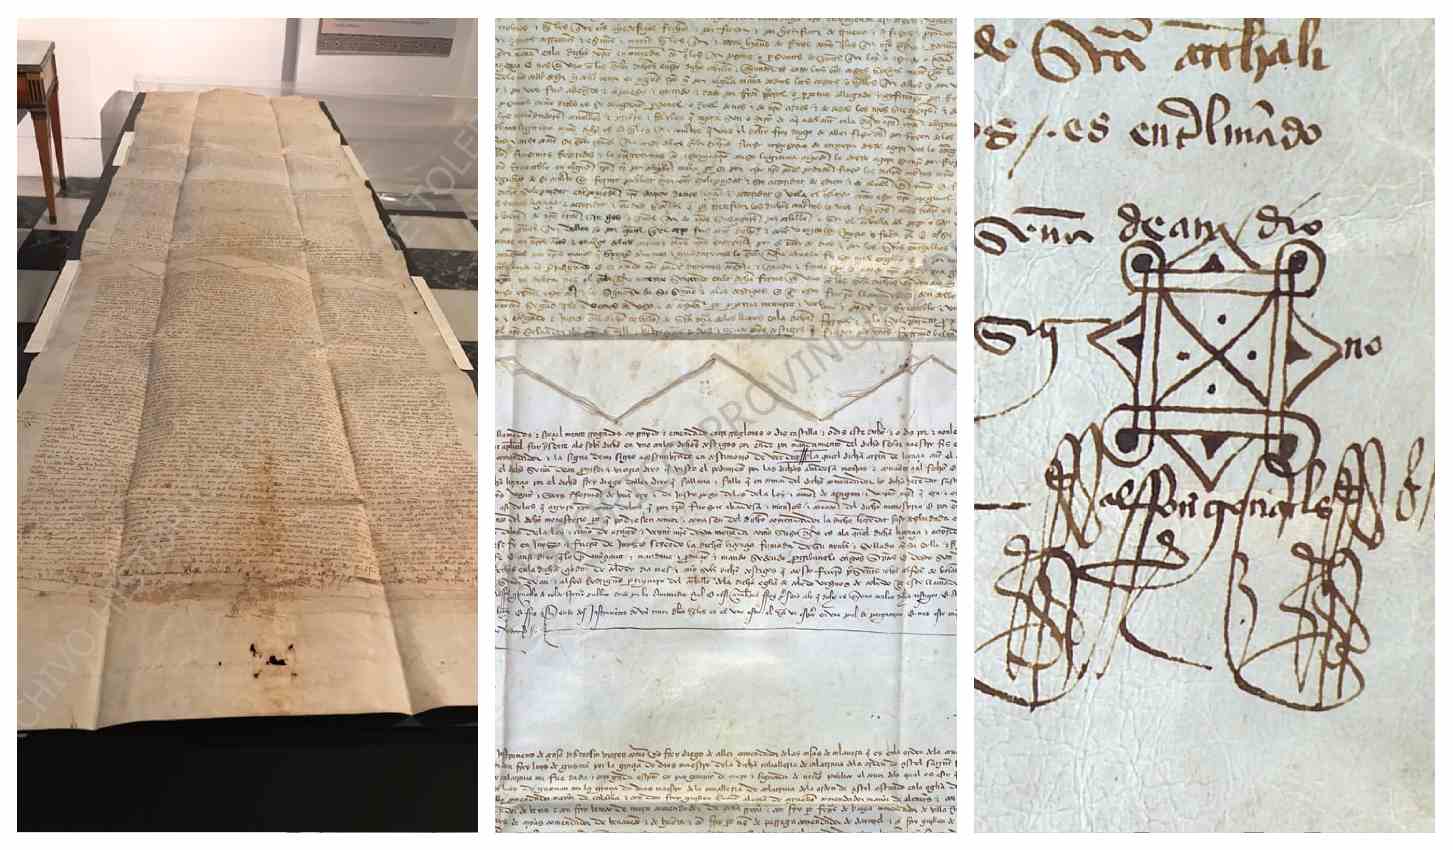 El enorme pergamino que se expone en el Archivo Provincial de Toledo.